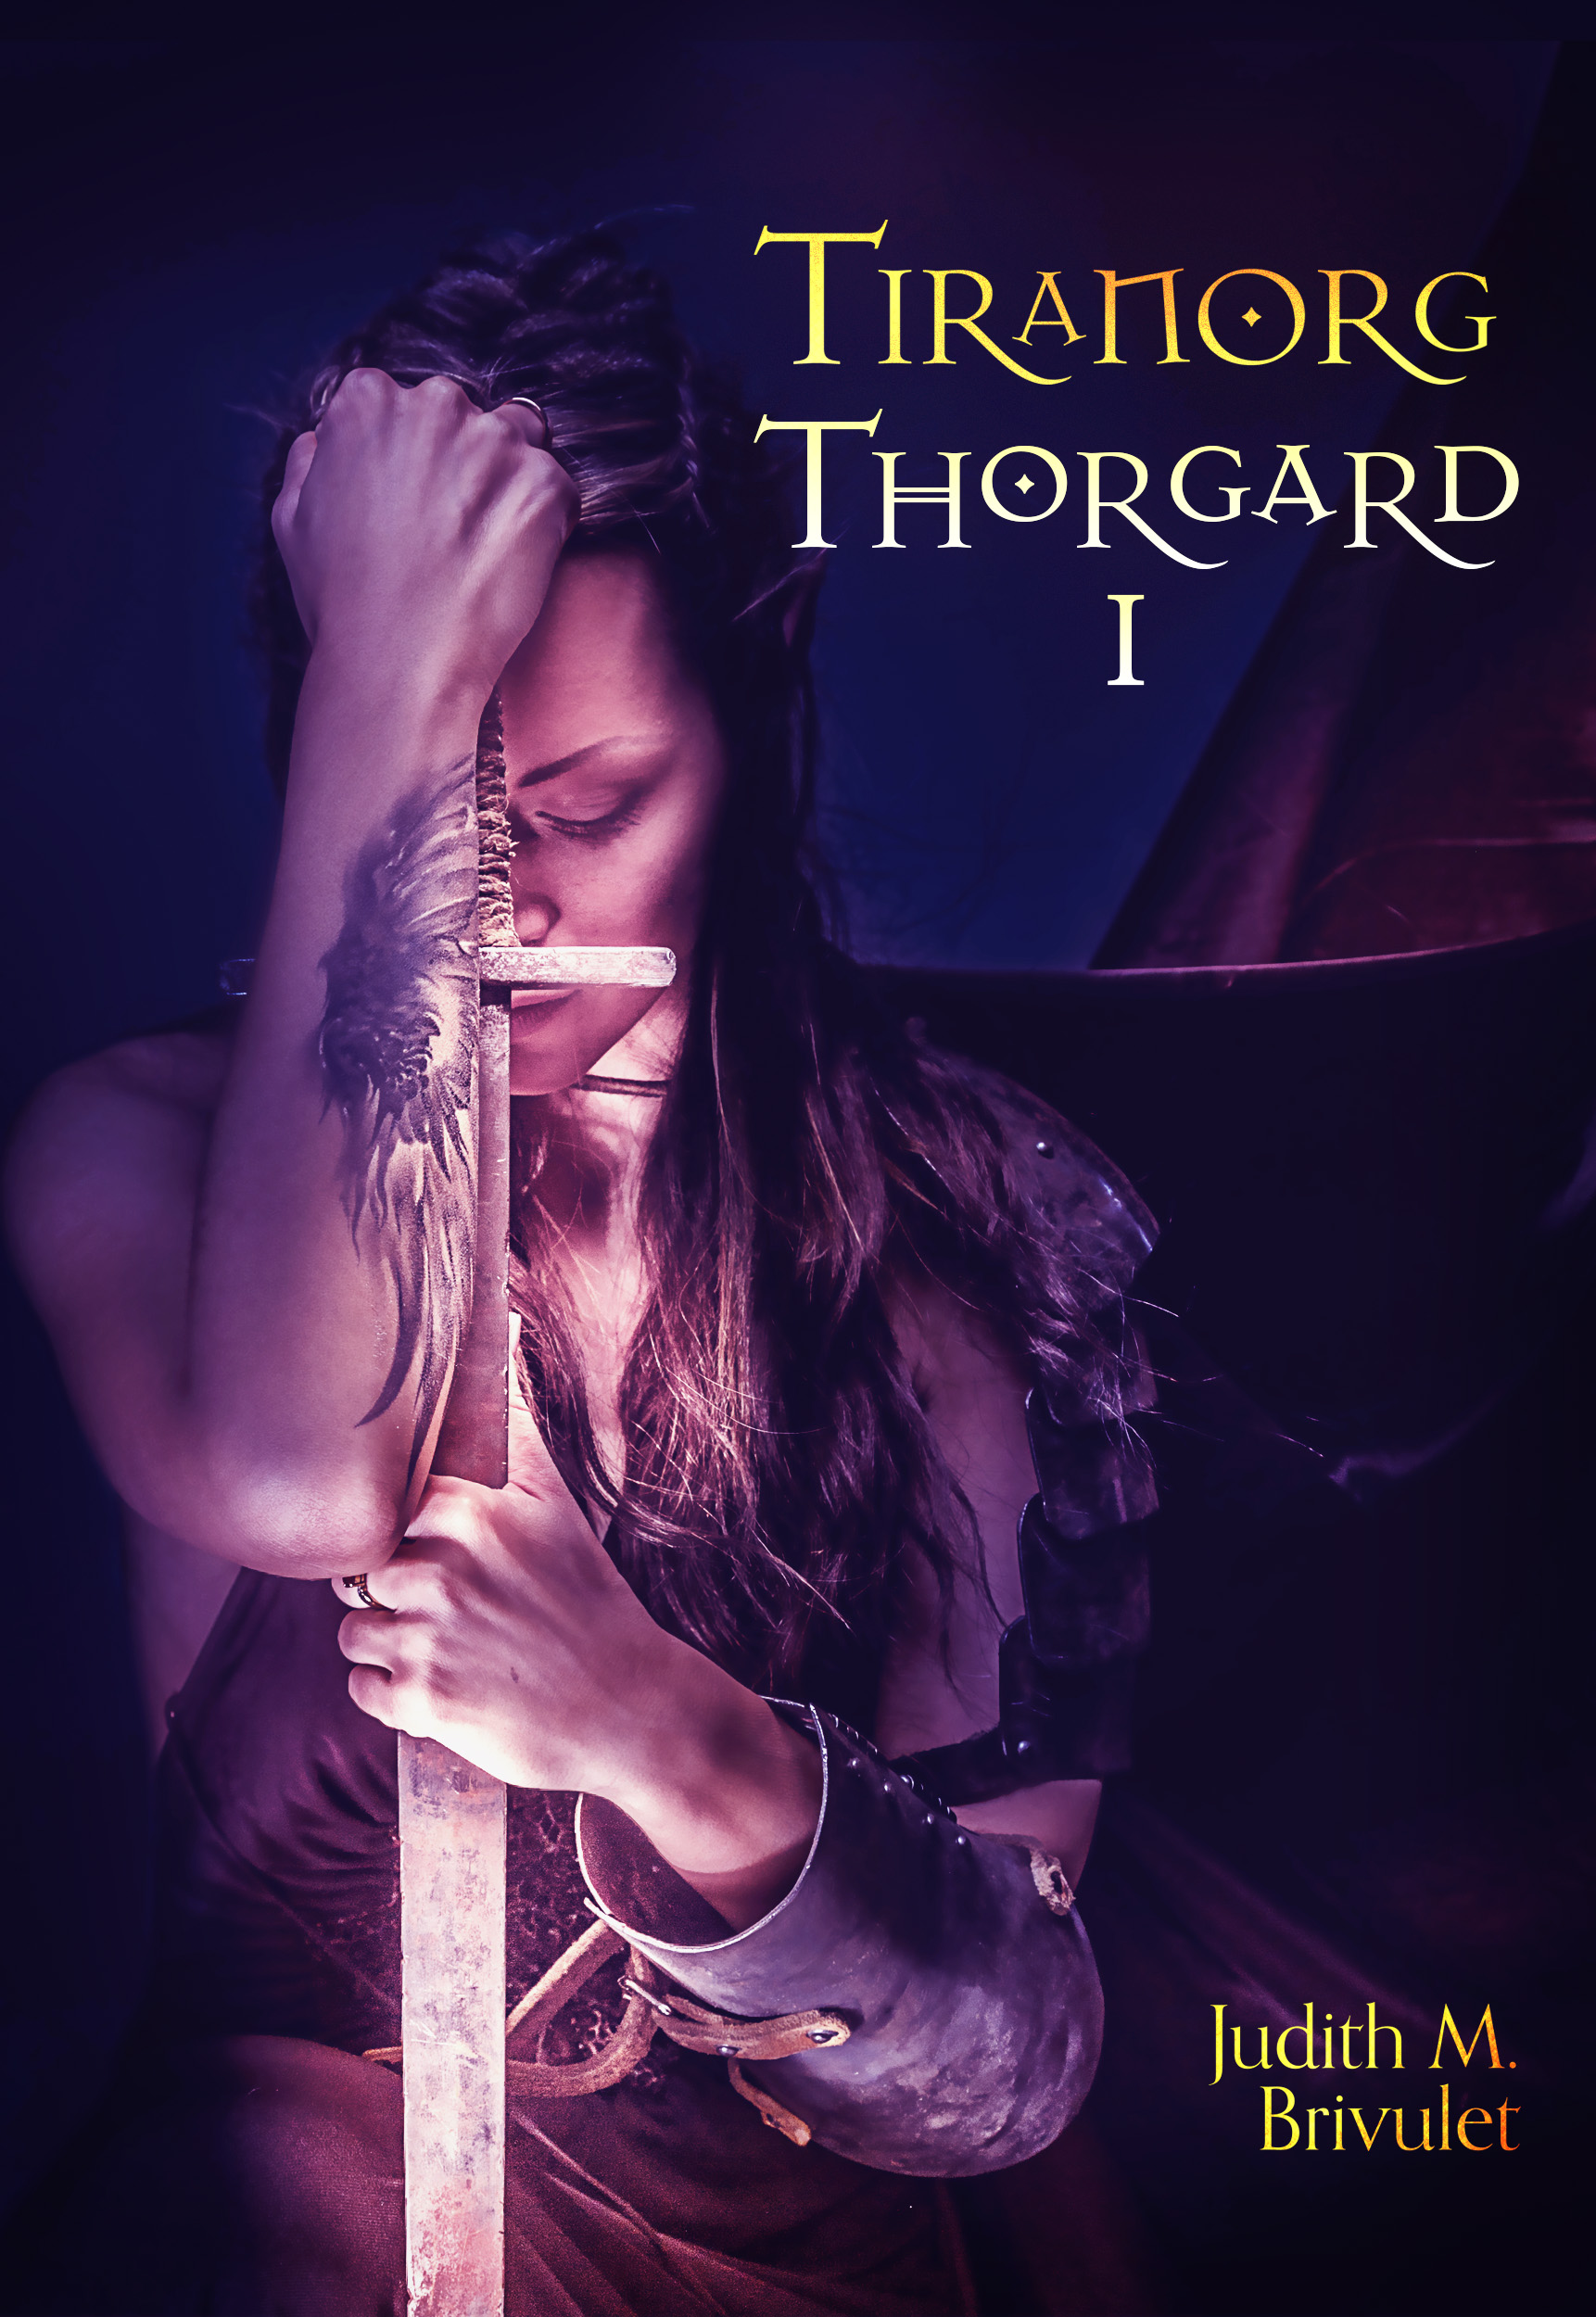 Tiranorg, Thorgard